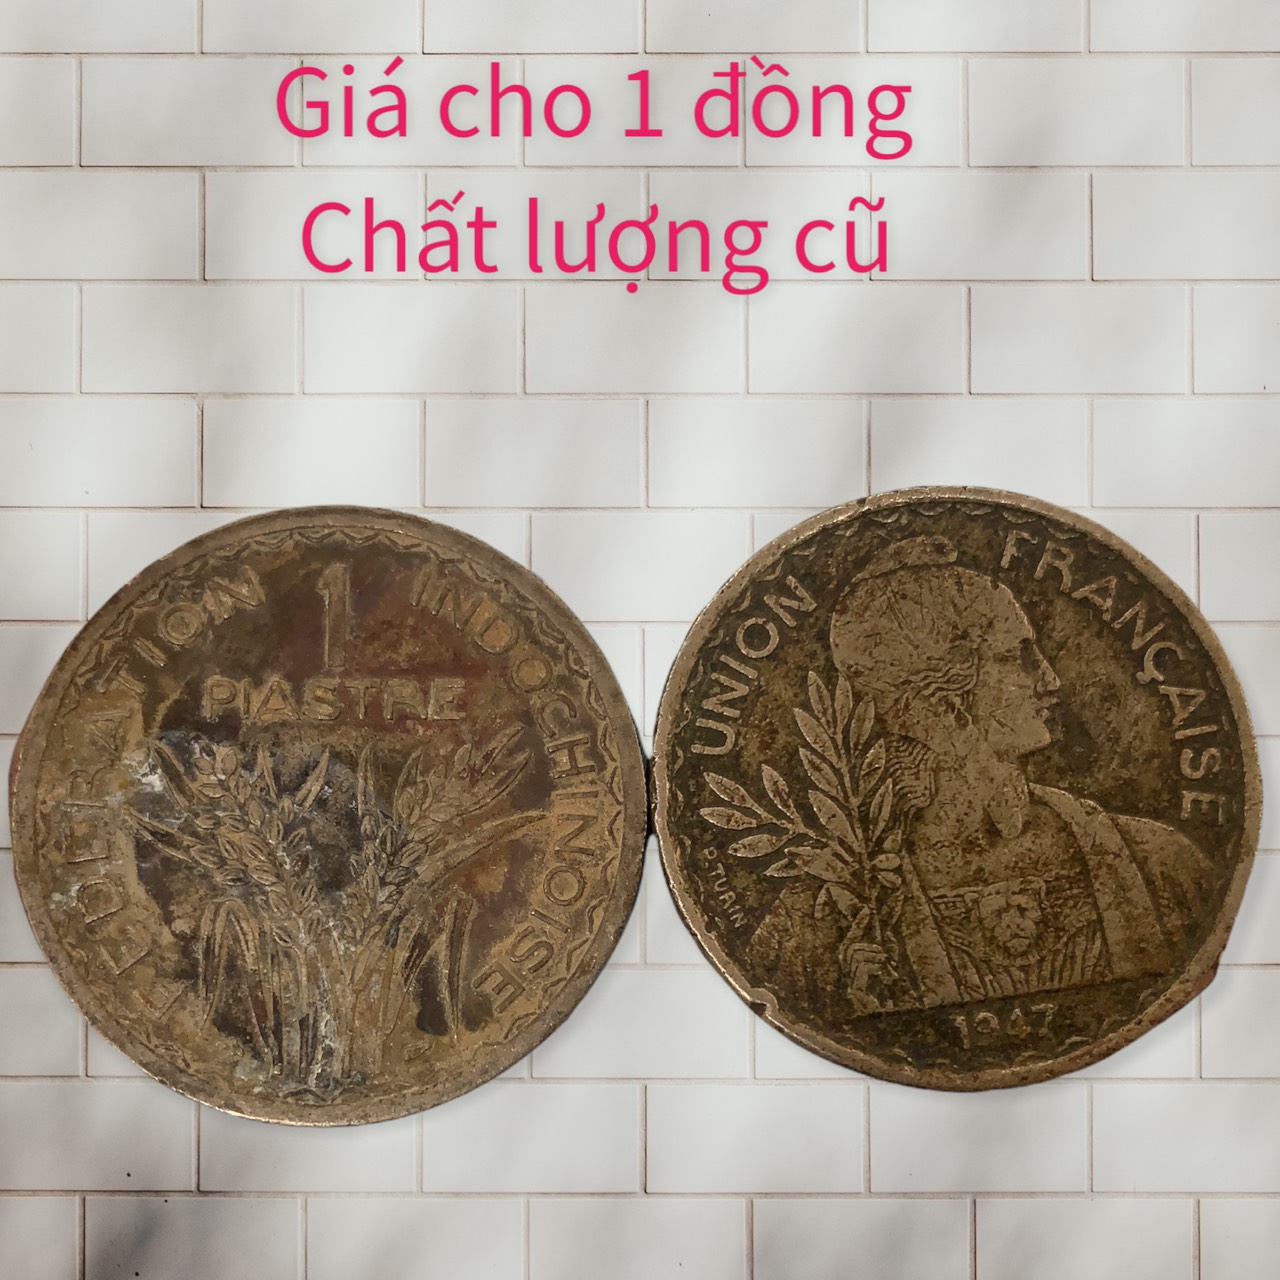 [Chất lượng cũ] Đồng Xu cổ xưa thời Đông Dương 1 piastre 1946, 1947 do shop tự chụp.